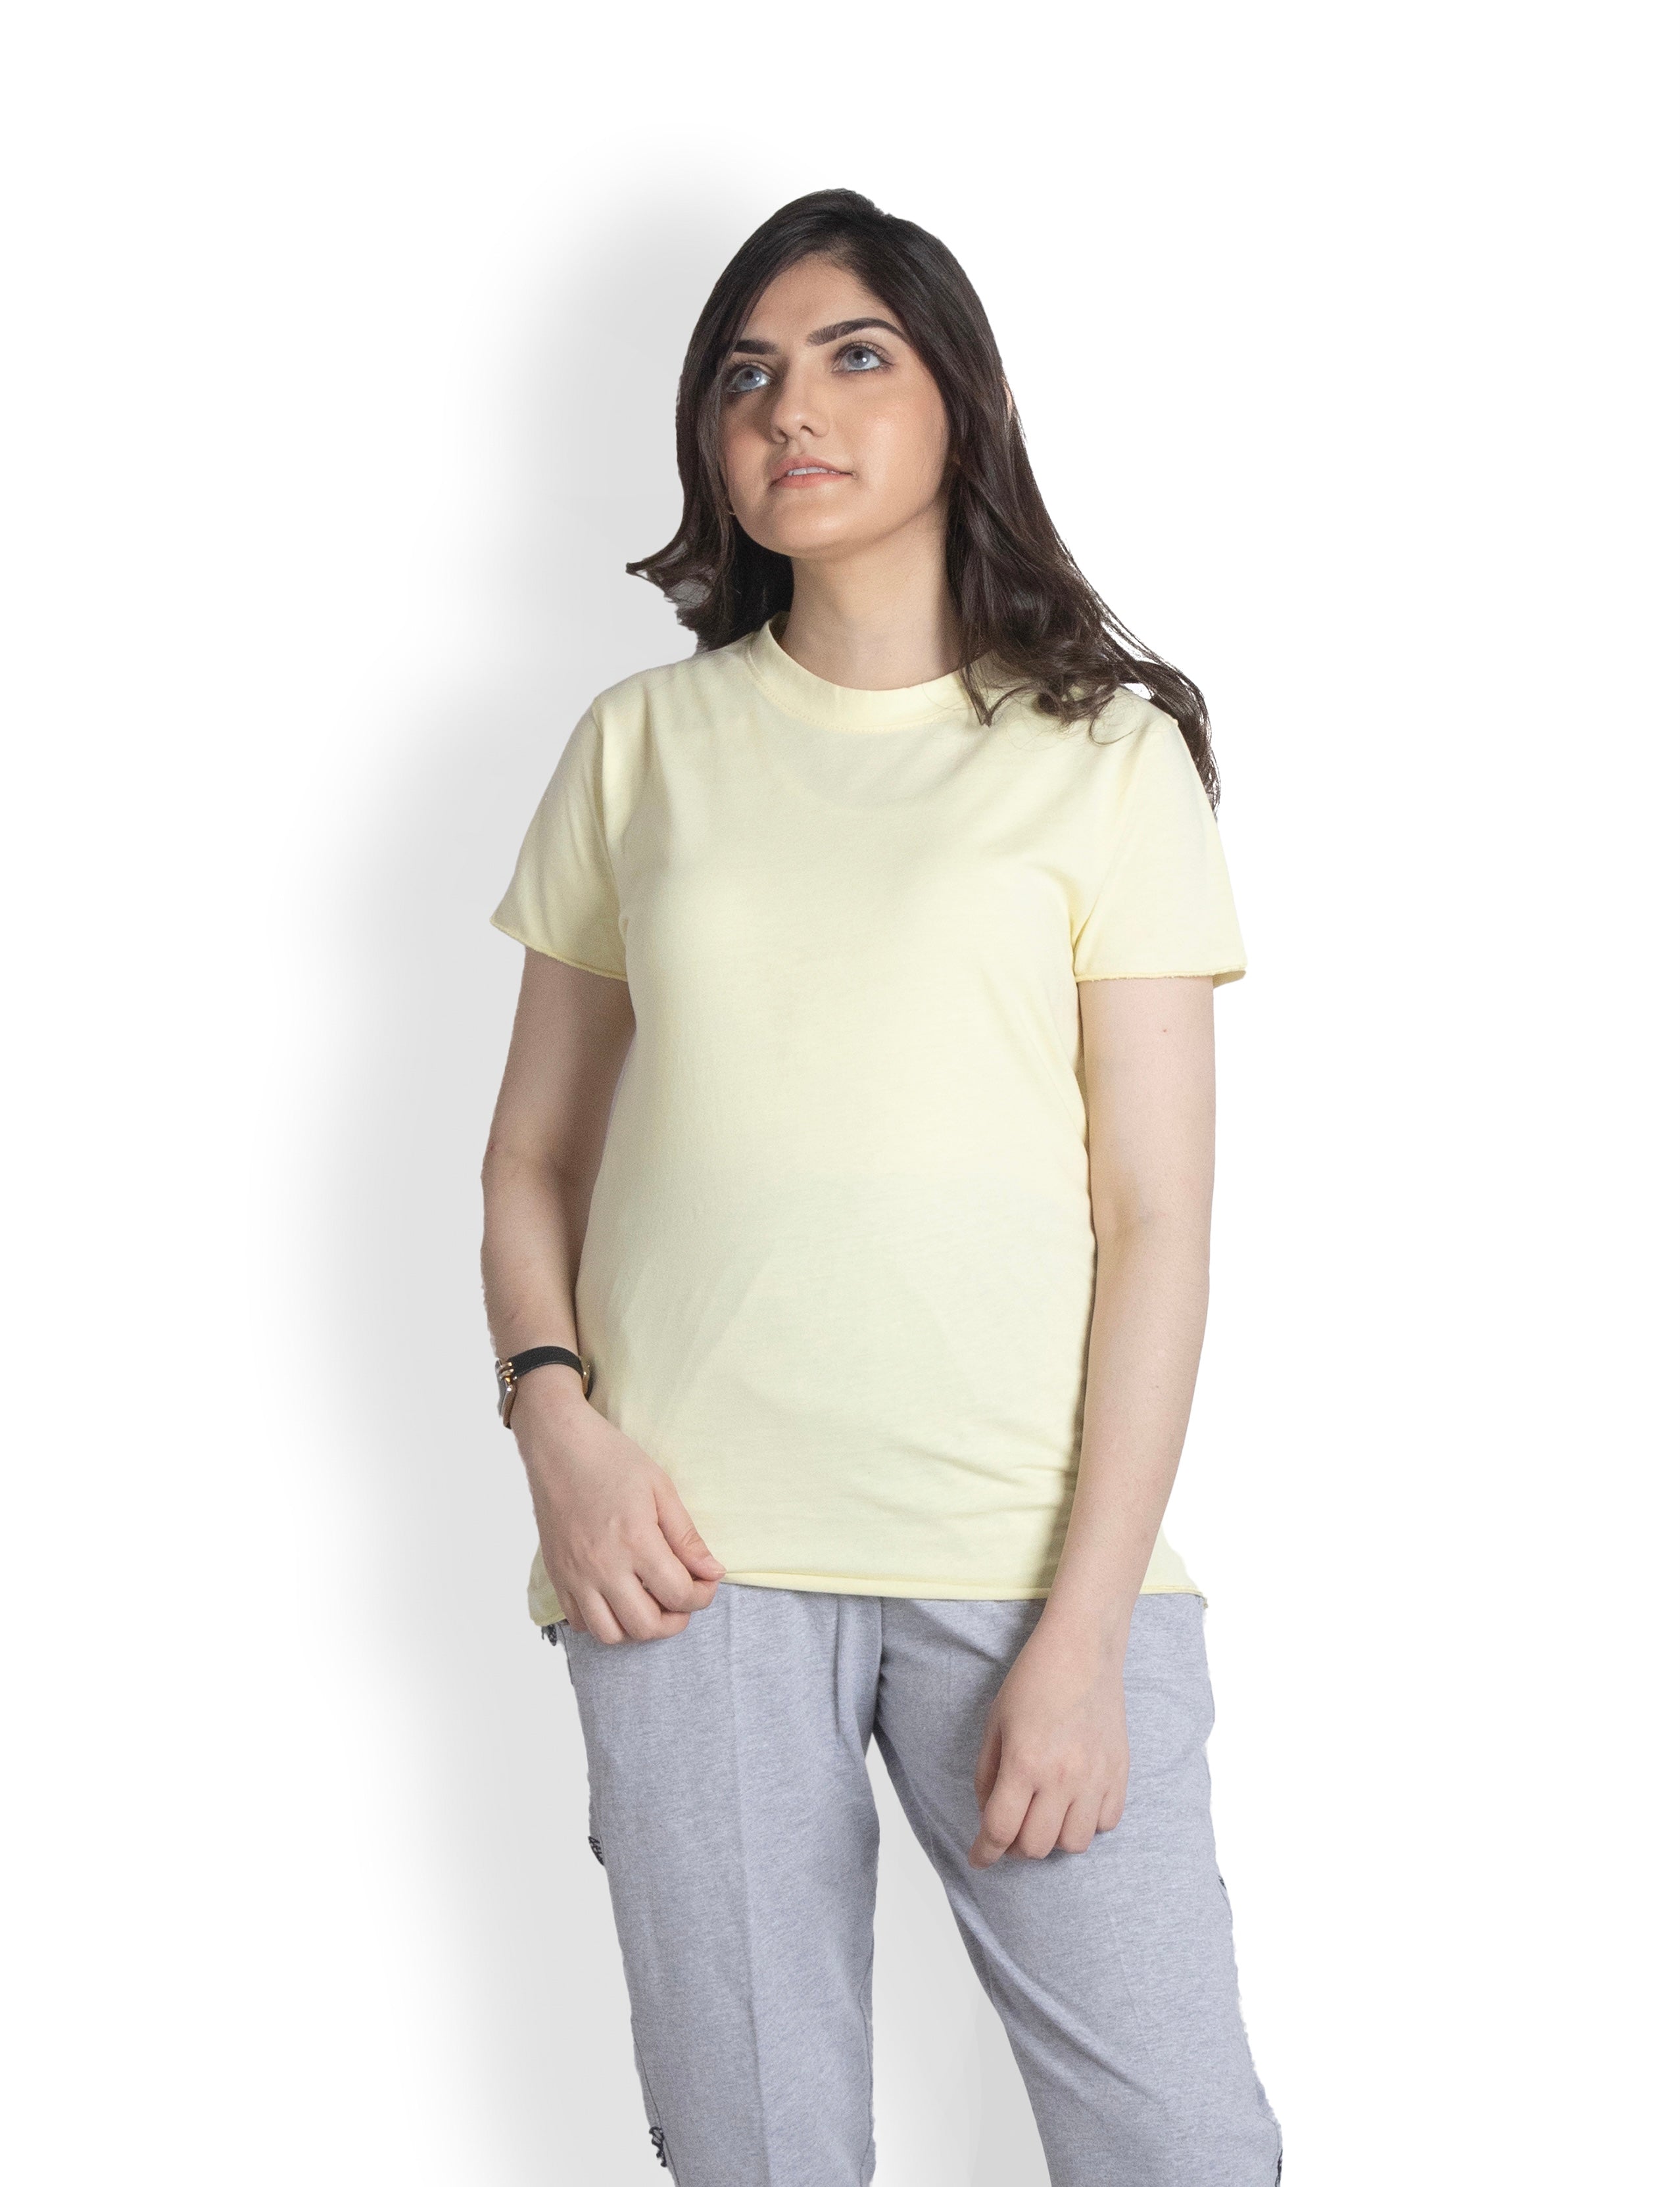 Women's Cotton Yellow T-shirt